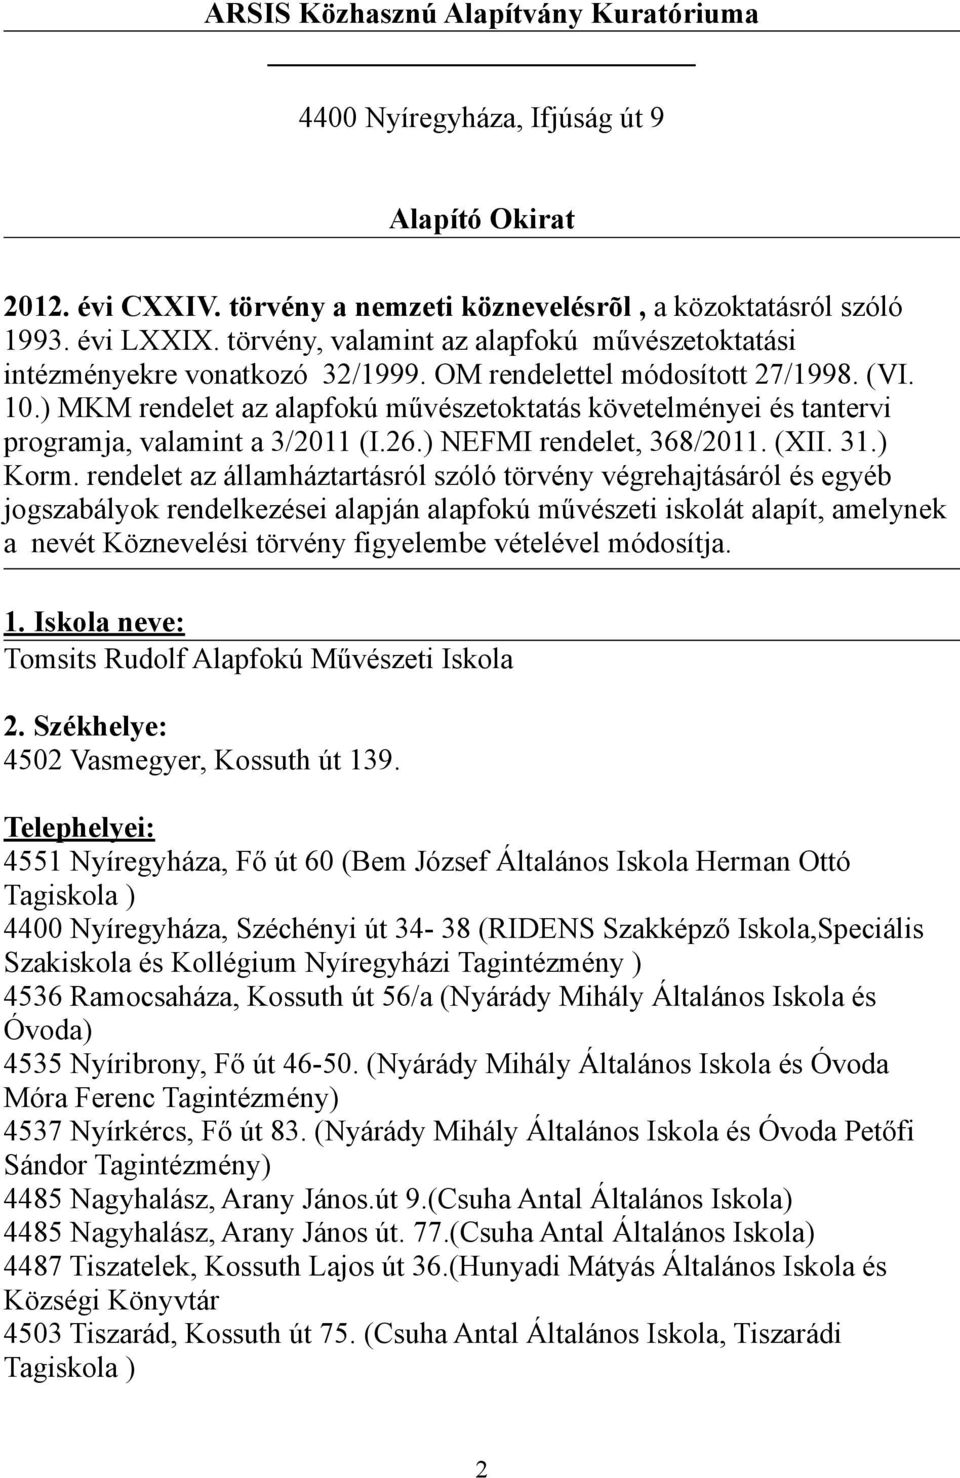 ) MKM rendelet az alapfokú művészetoktatás követelményei és tantervi programja, valamint a 3/2011 (I.26.) NEFMI rendelet, 368/2011. (XII. 31.) Korm.